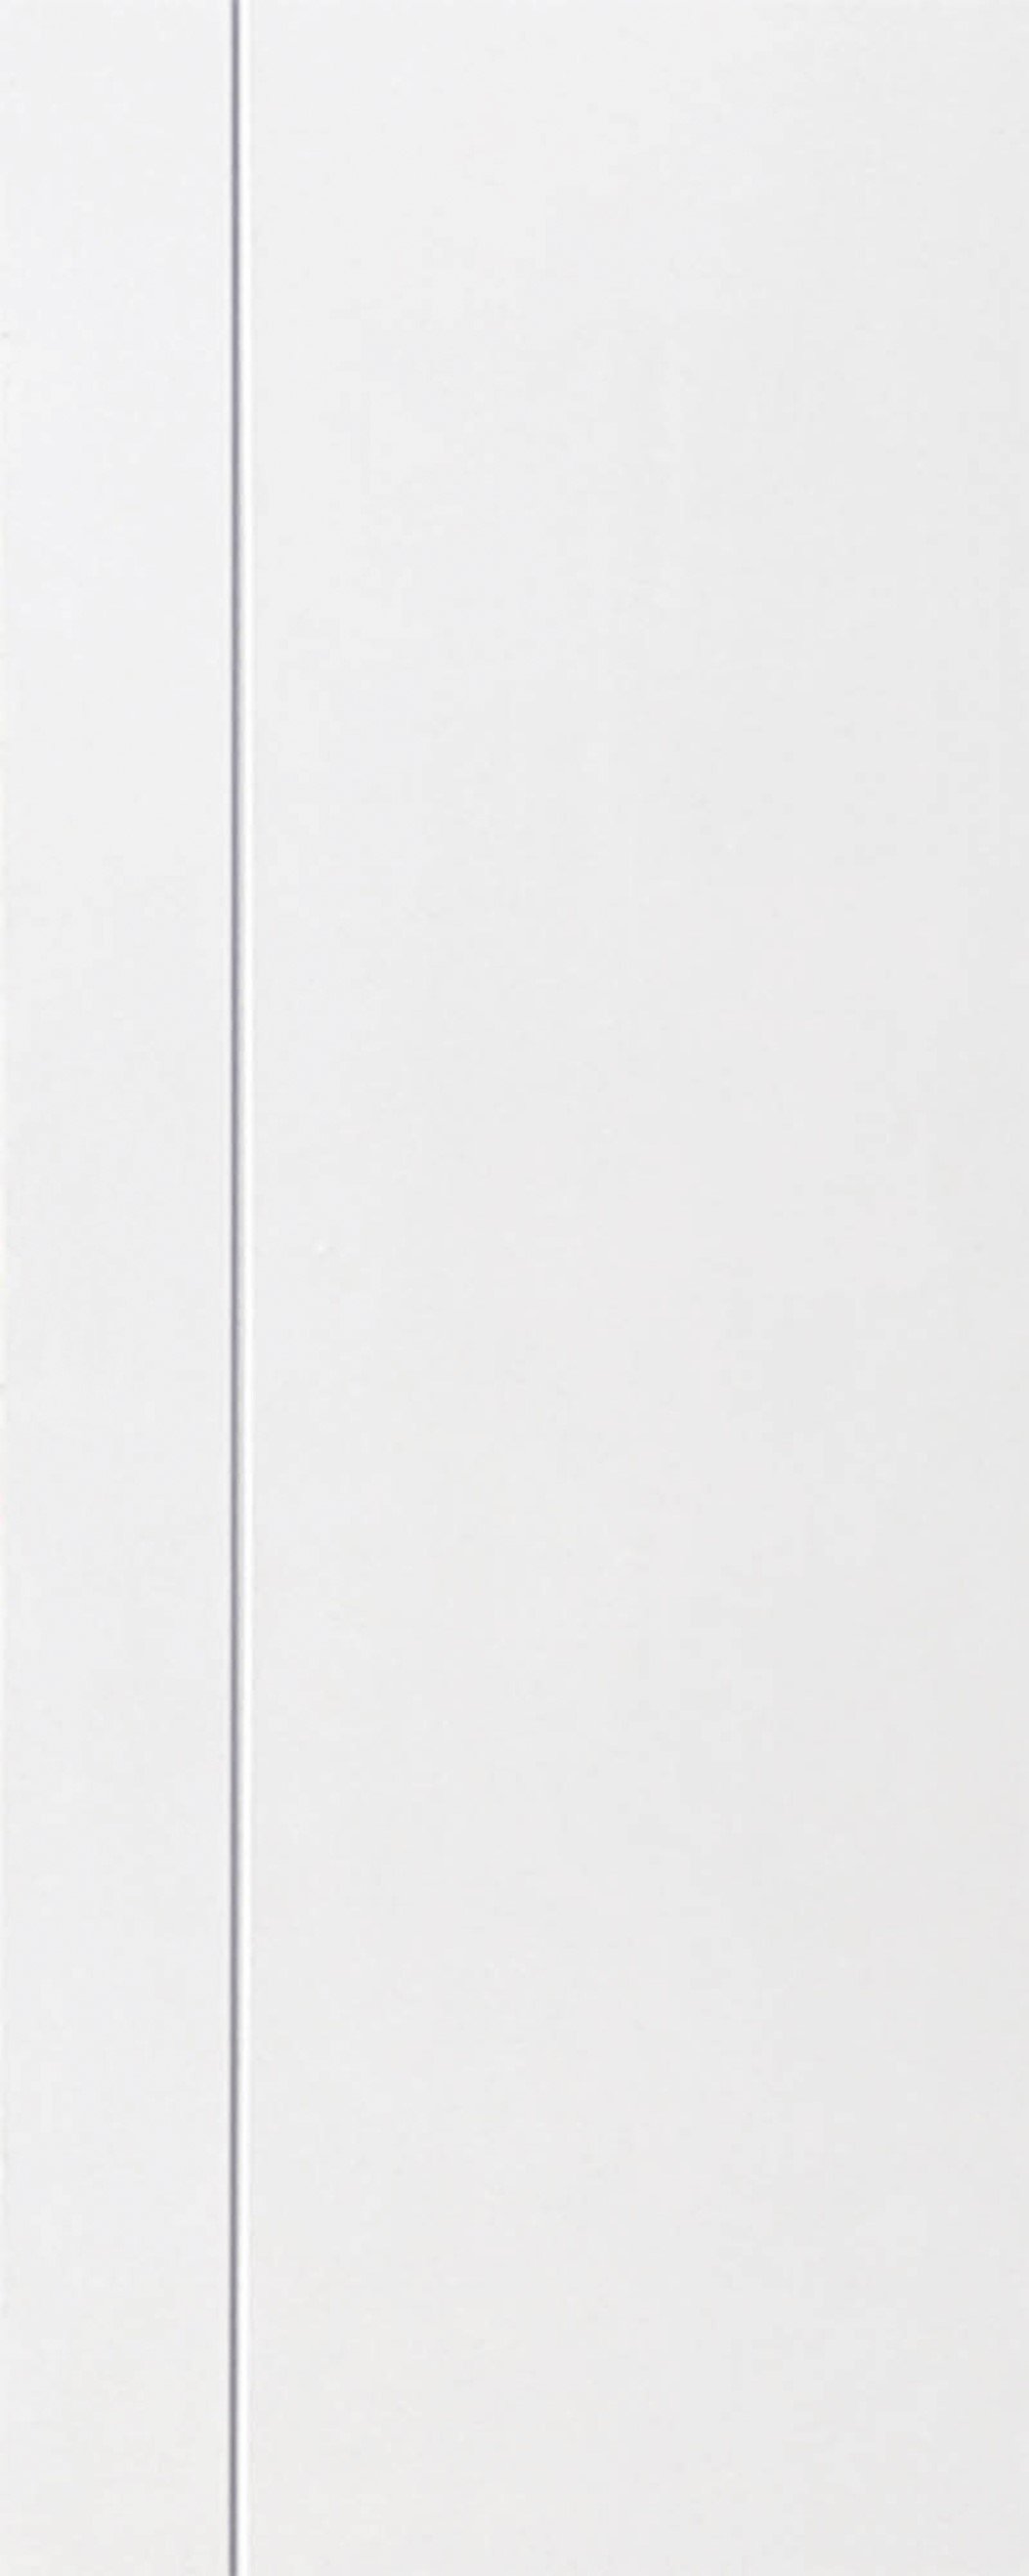 ประตูUPVC ผิวหน้าลายไม้ สีขาว เซาะร่องสำเร็จรูป 1 เส้นตรง